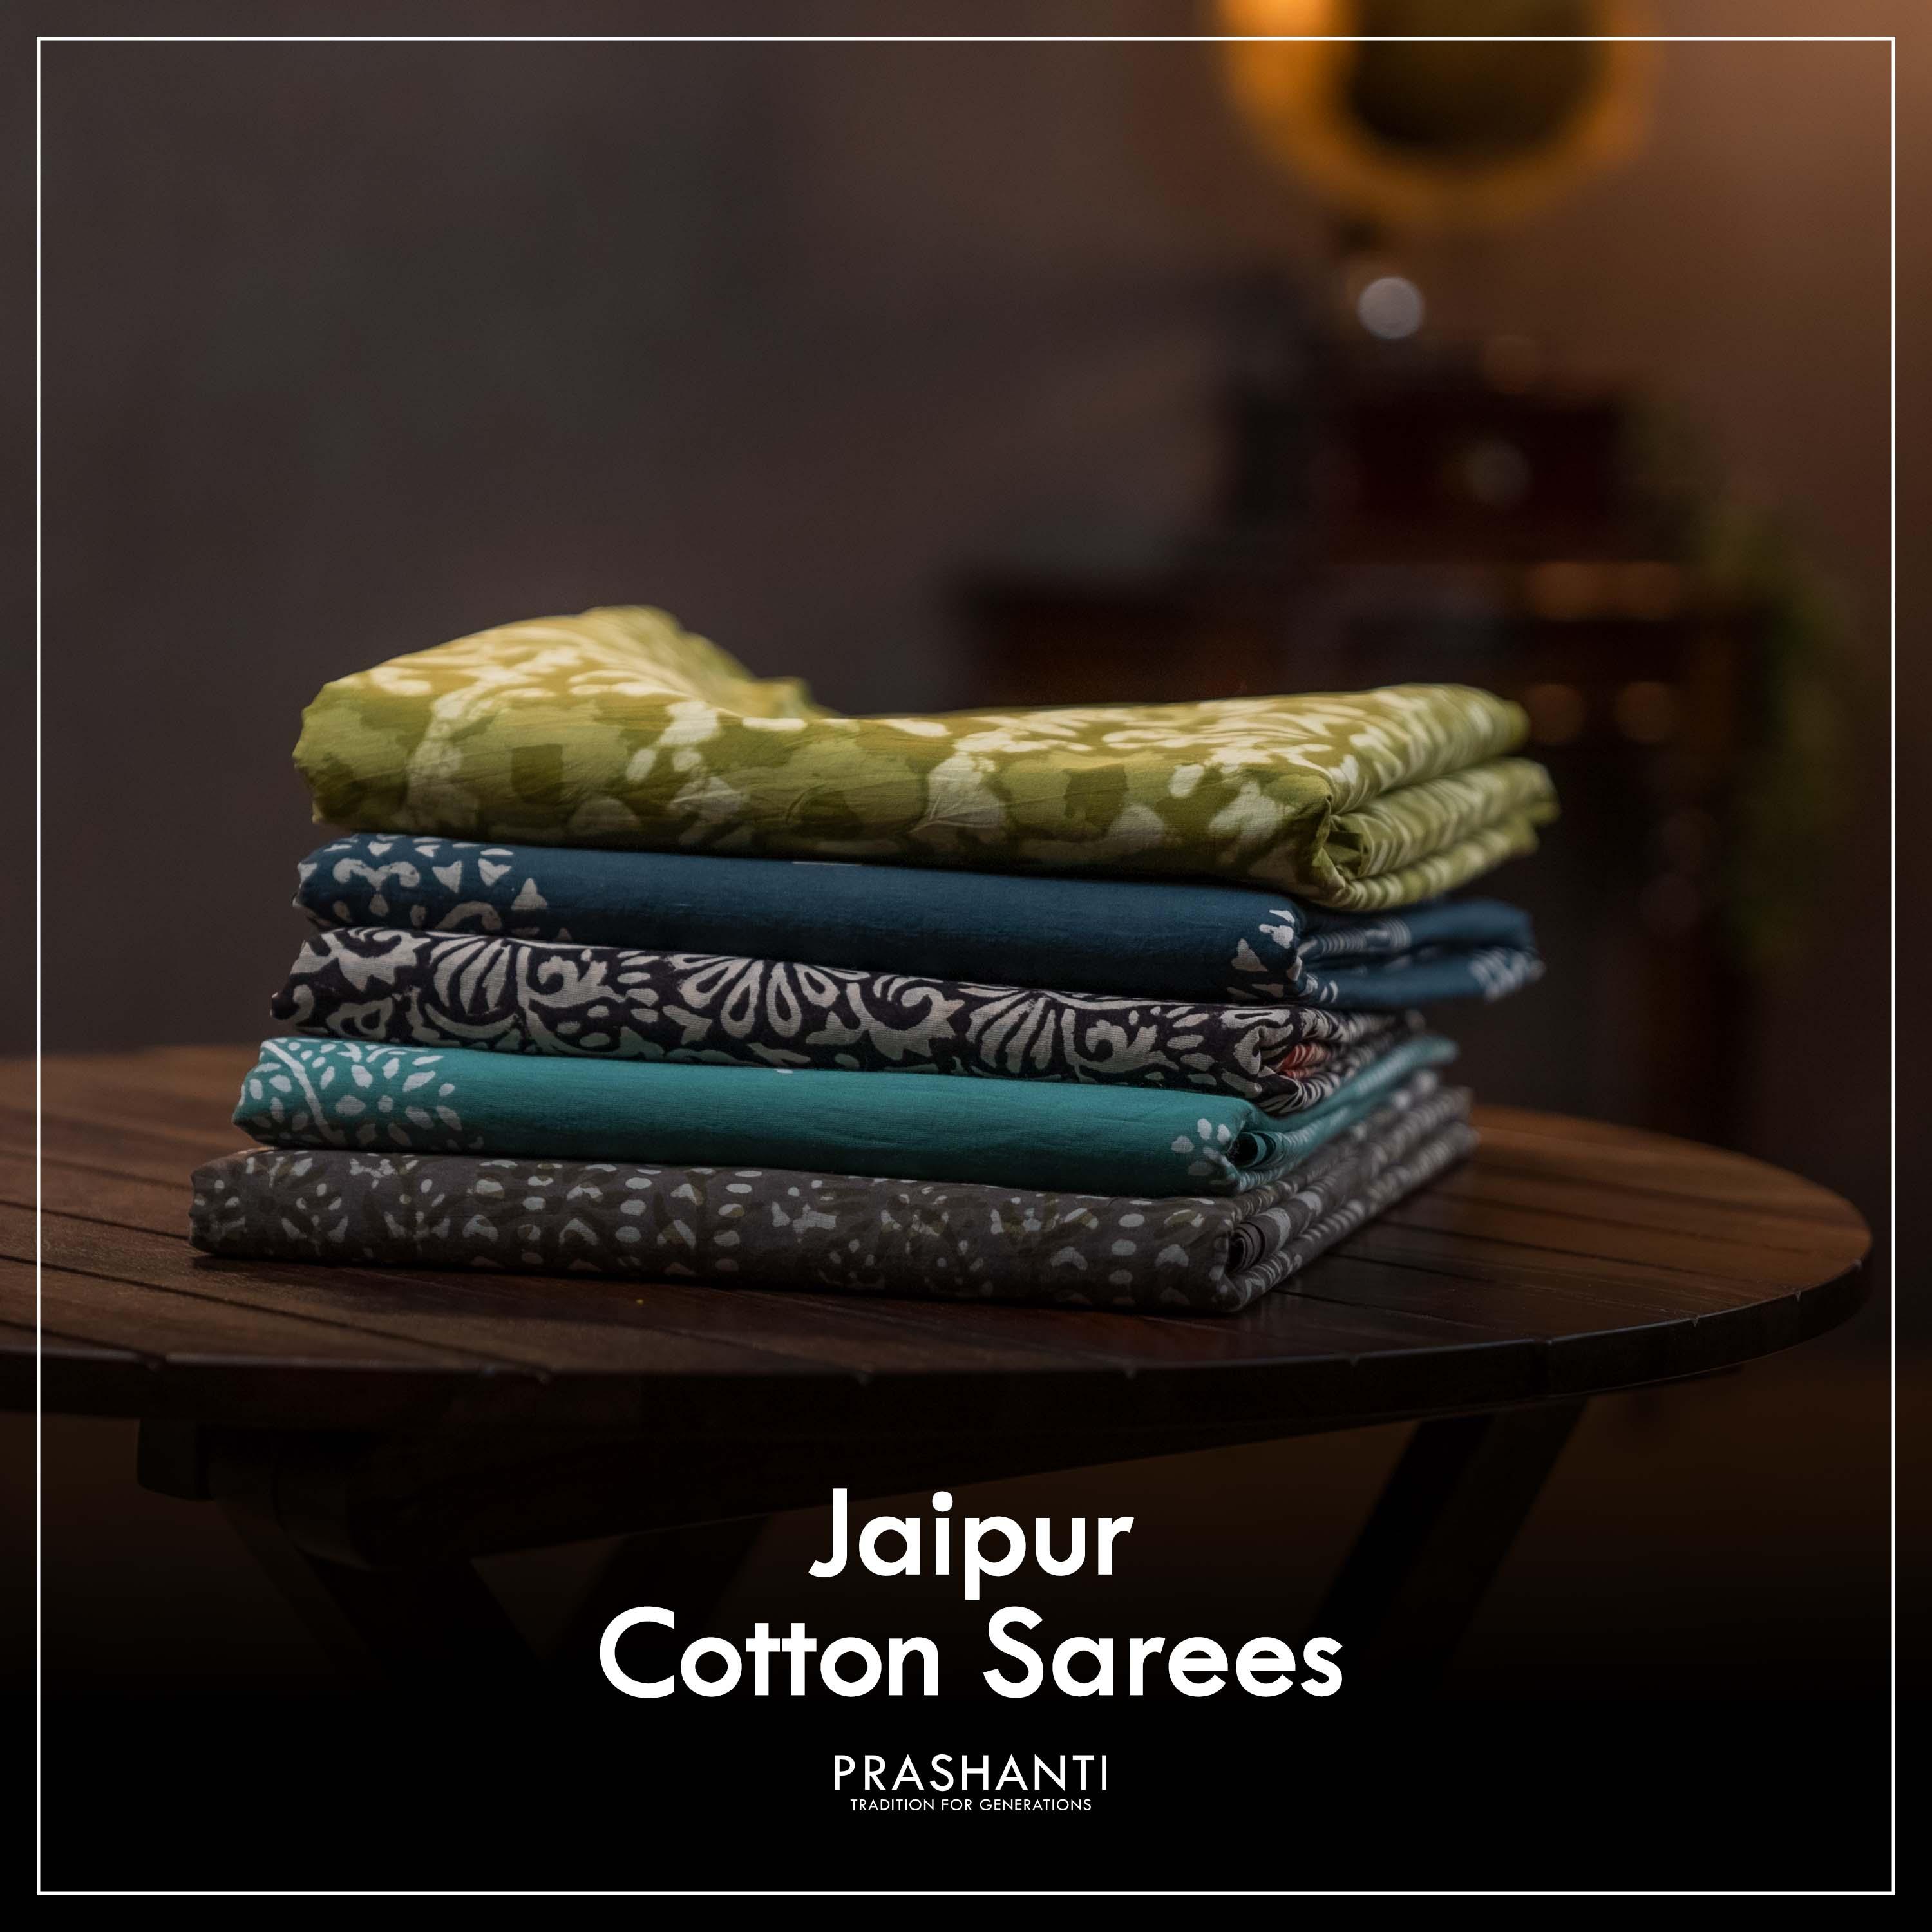 Jaipur Cotton Sarees, Prashanti